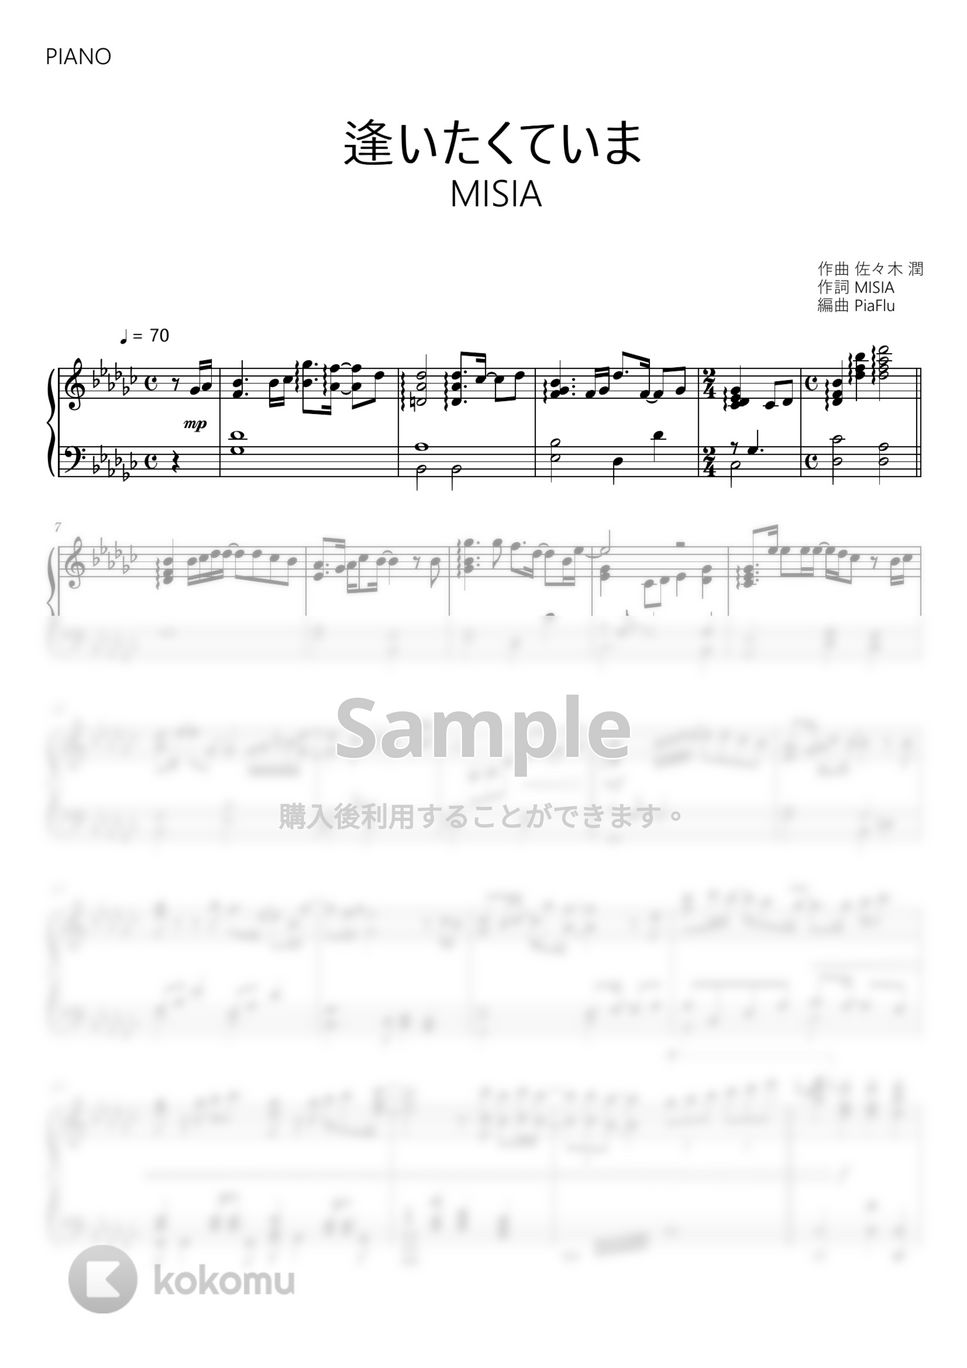 MISIA - 逢いたくていま (ピアノ) by PiaFlu